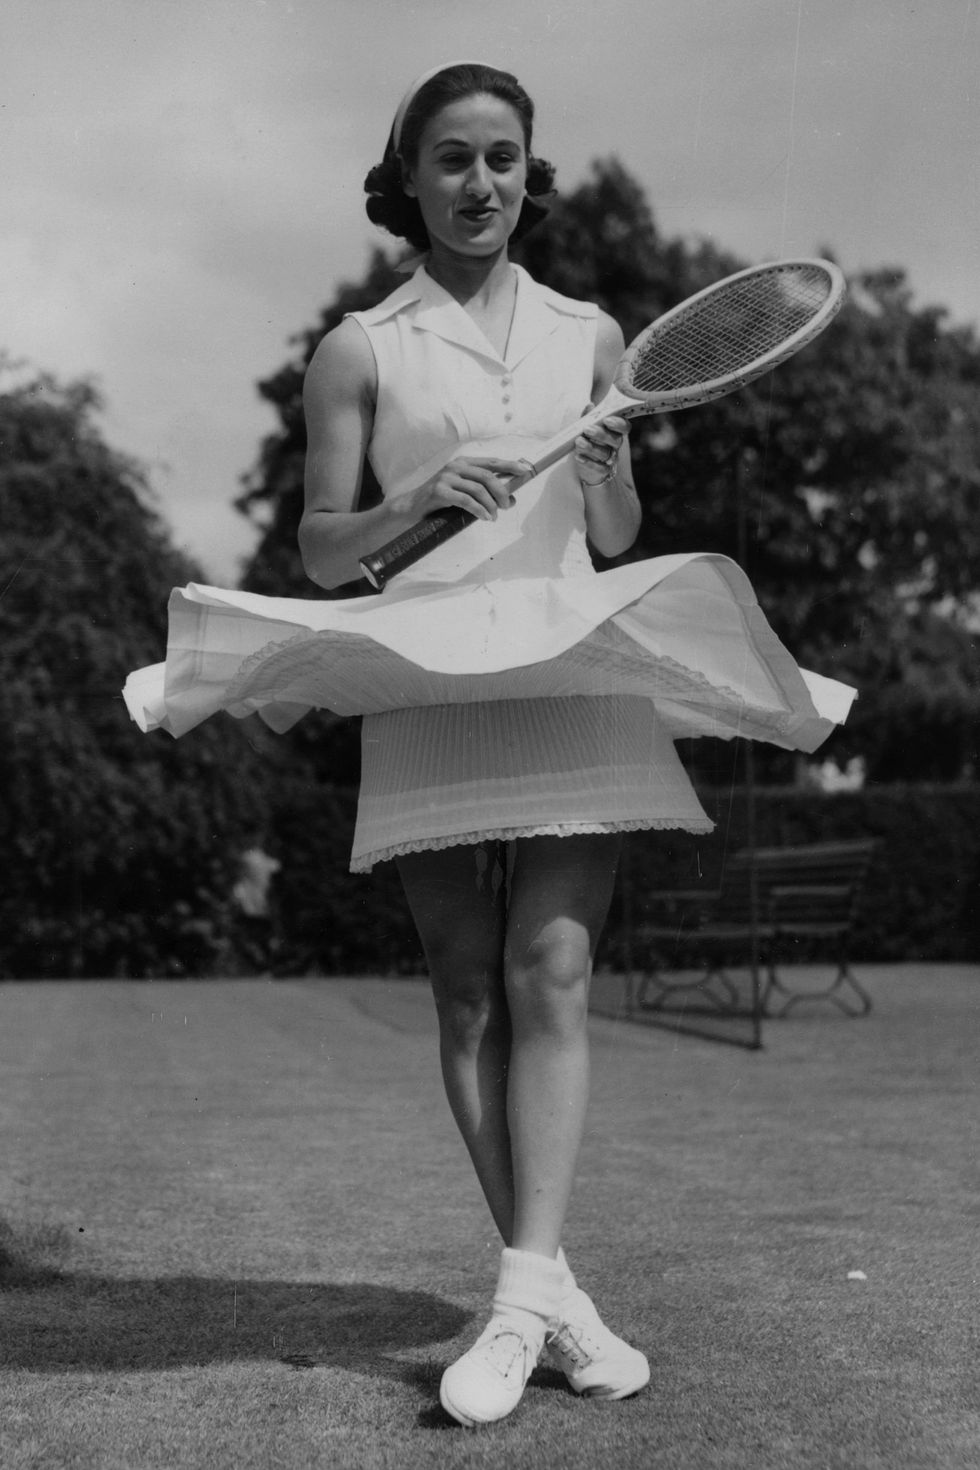 Wimbledon fashion in the 1950s